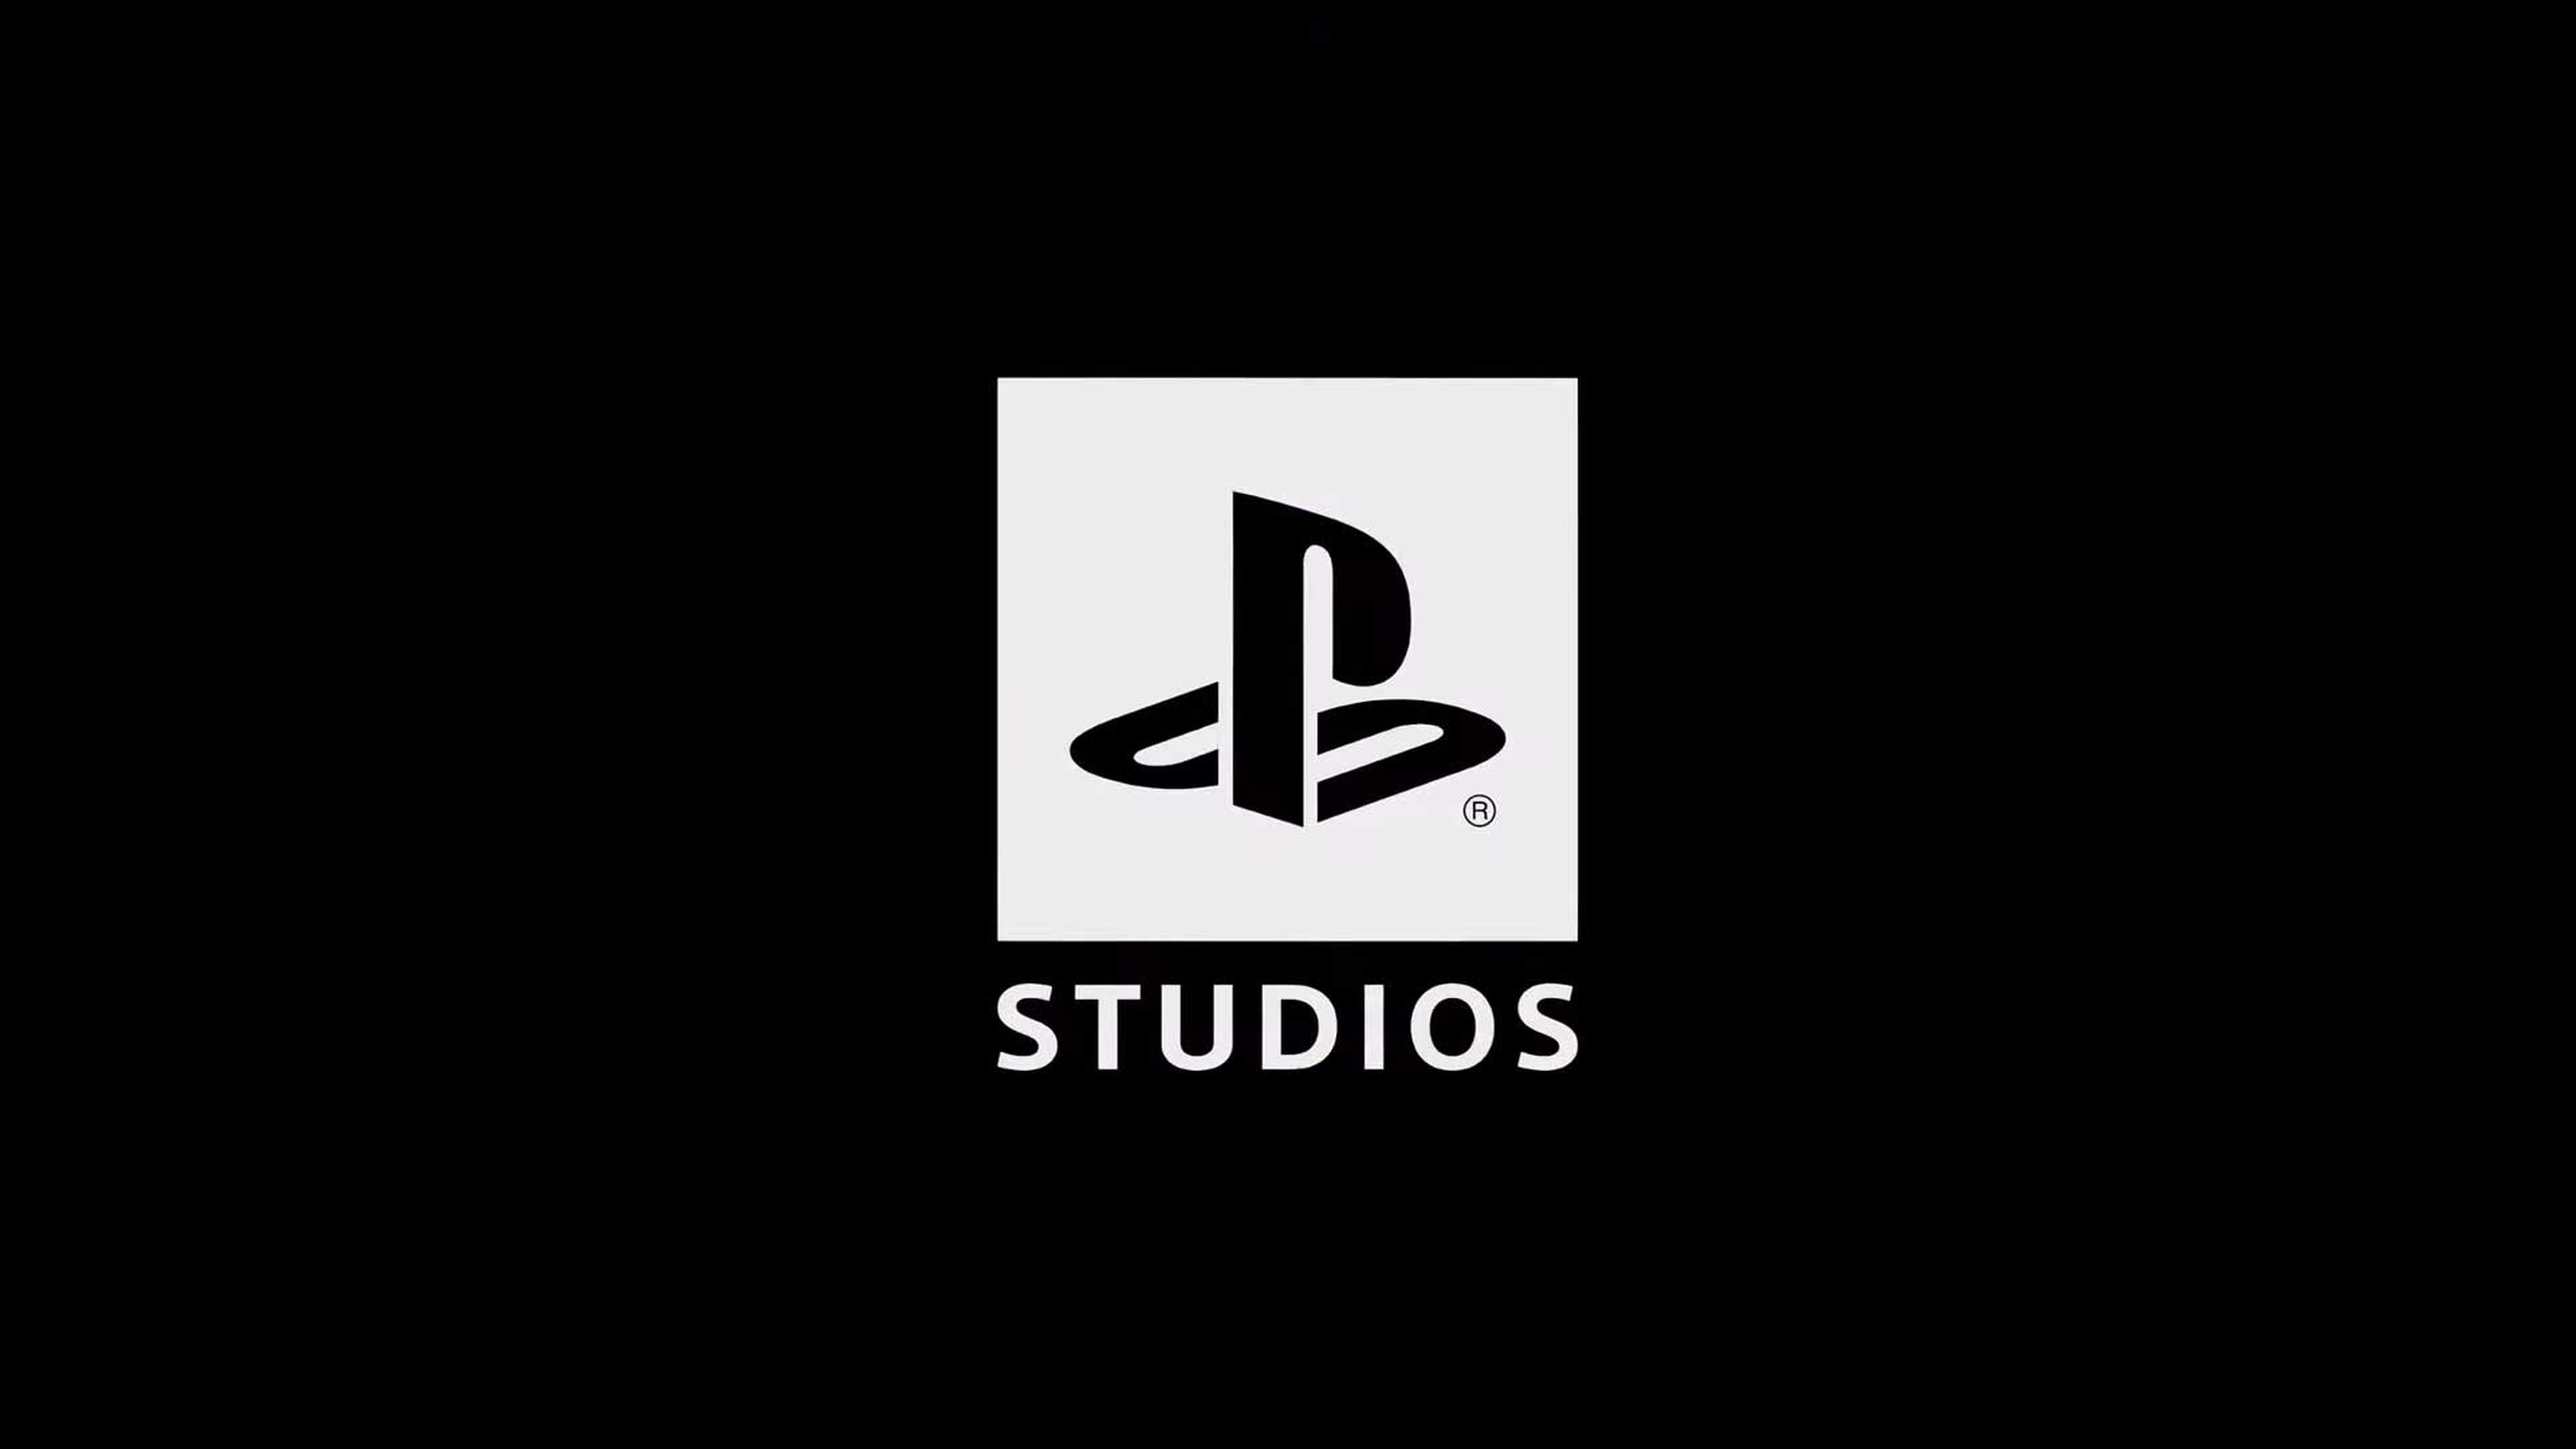 PS5 Studios